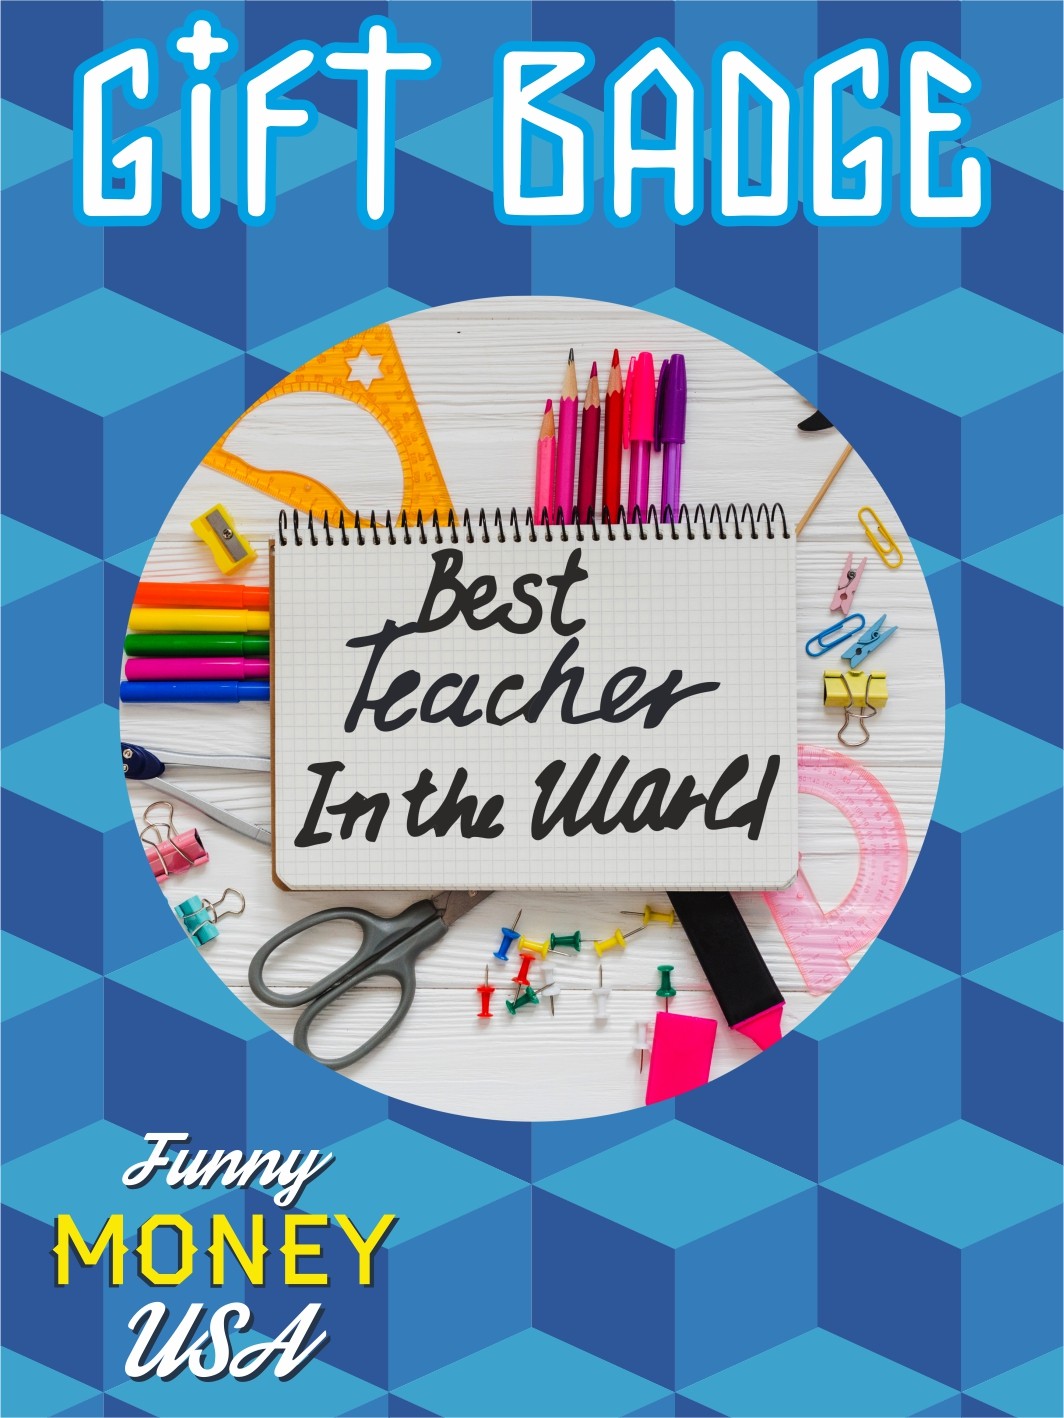 Gift badges "Best teacher on the world"